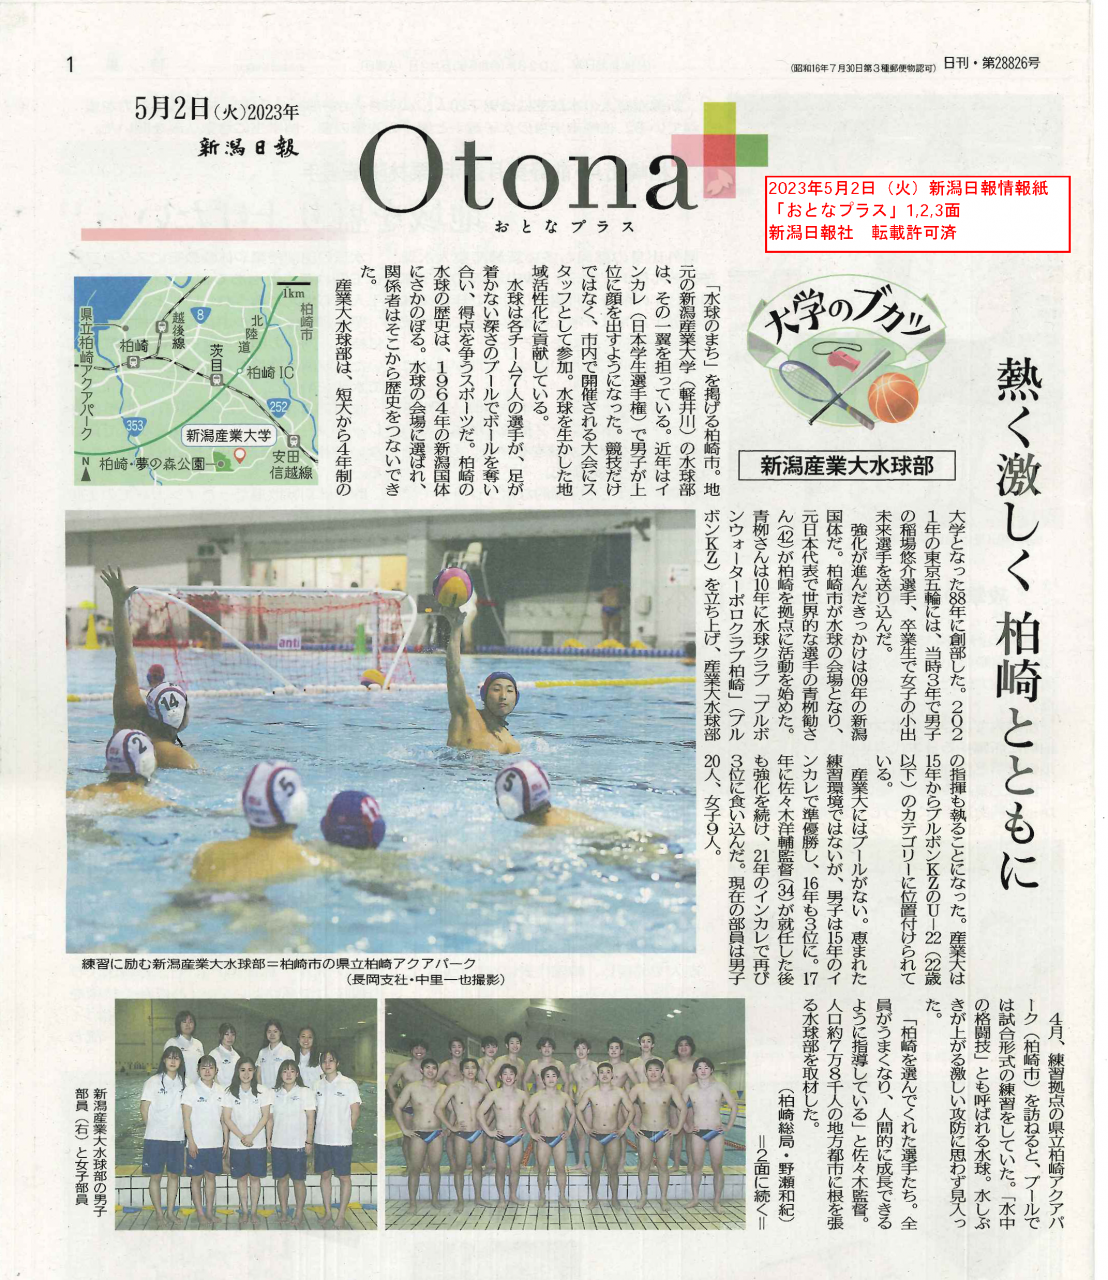 【水球部】新潟日報『おとなプラス（Otona+）』に掲載されました